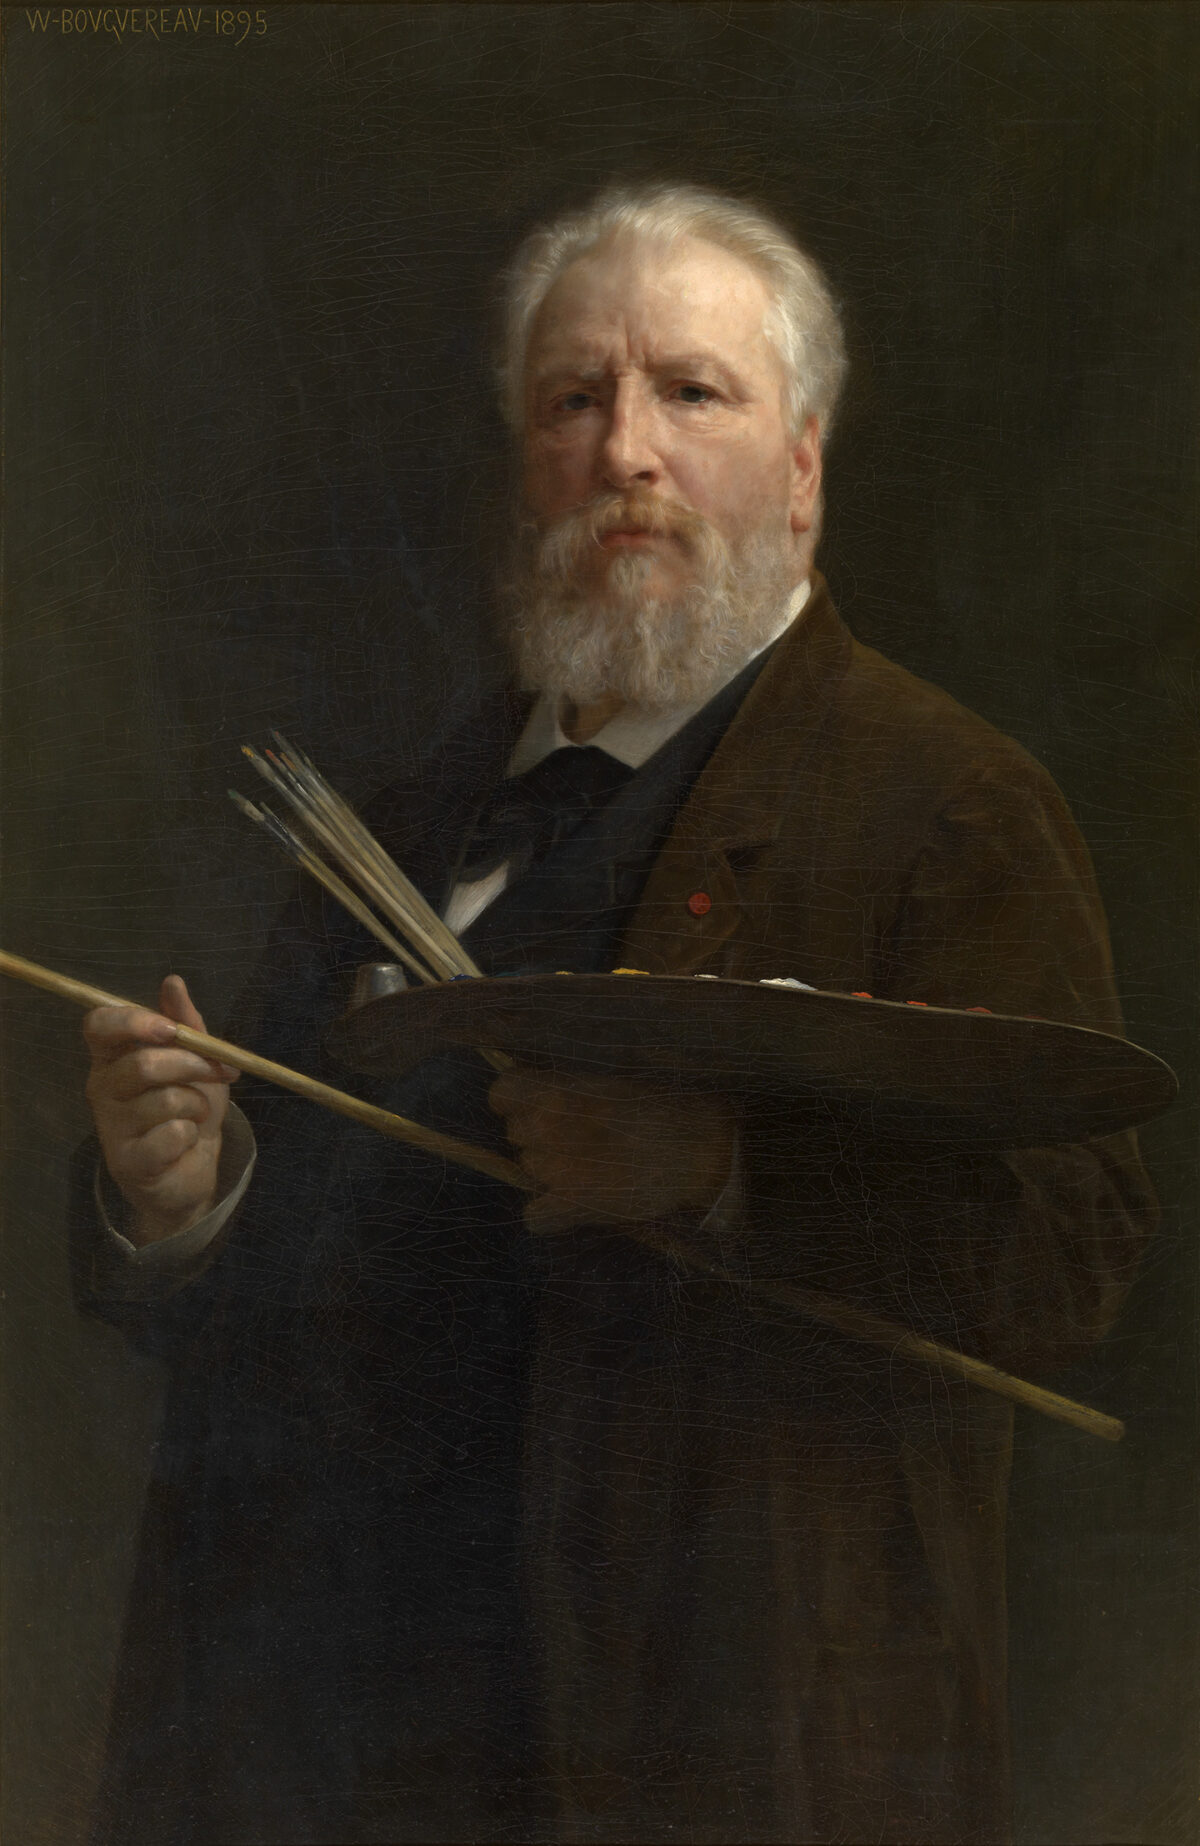 Bức chân dung tự họa của họa sĩ William Adolphe Bouguereau, năm 1895. Tranh sơn dầu trên vải canvas. Bảo tàng Mỹ thuật Hoàng gia Antwerp, vương quốc Bỉ. (Ảnh: Tài liệu công cộng)